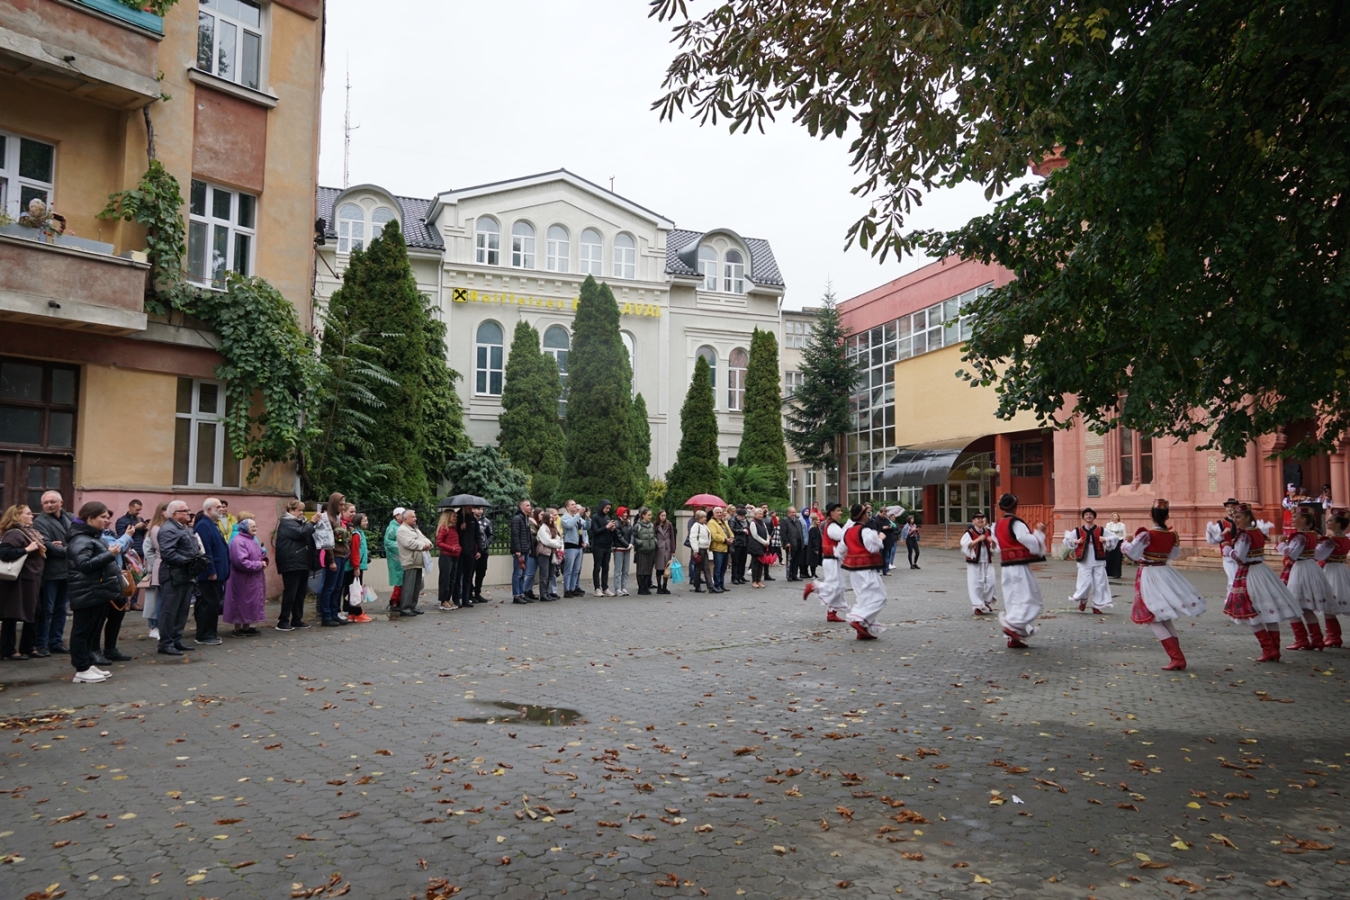 احتفلت جوقة ترانسكارباثيان الشعبية بعيدها الـ 77 بحفل خيري في وسط أوزهورود (صور)